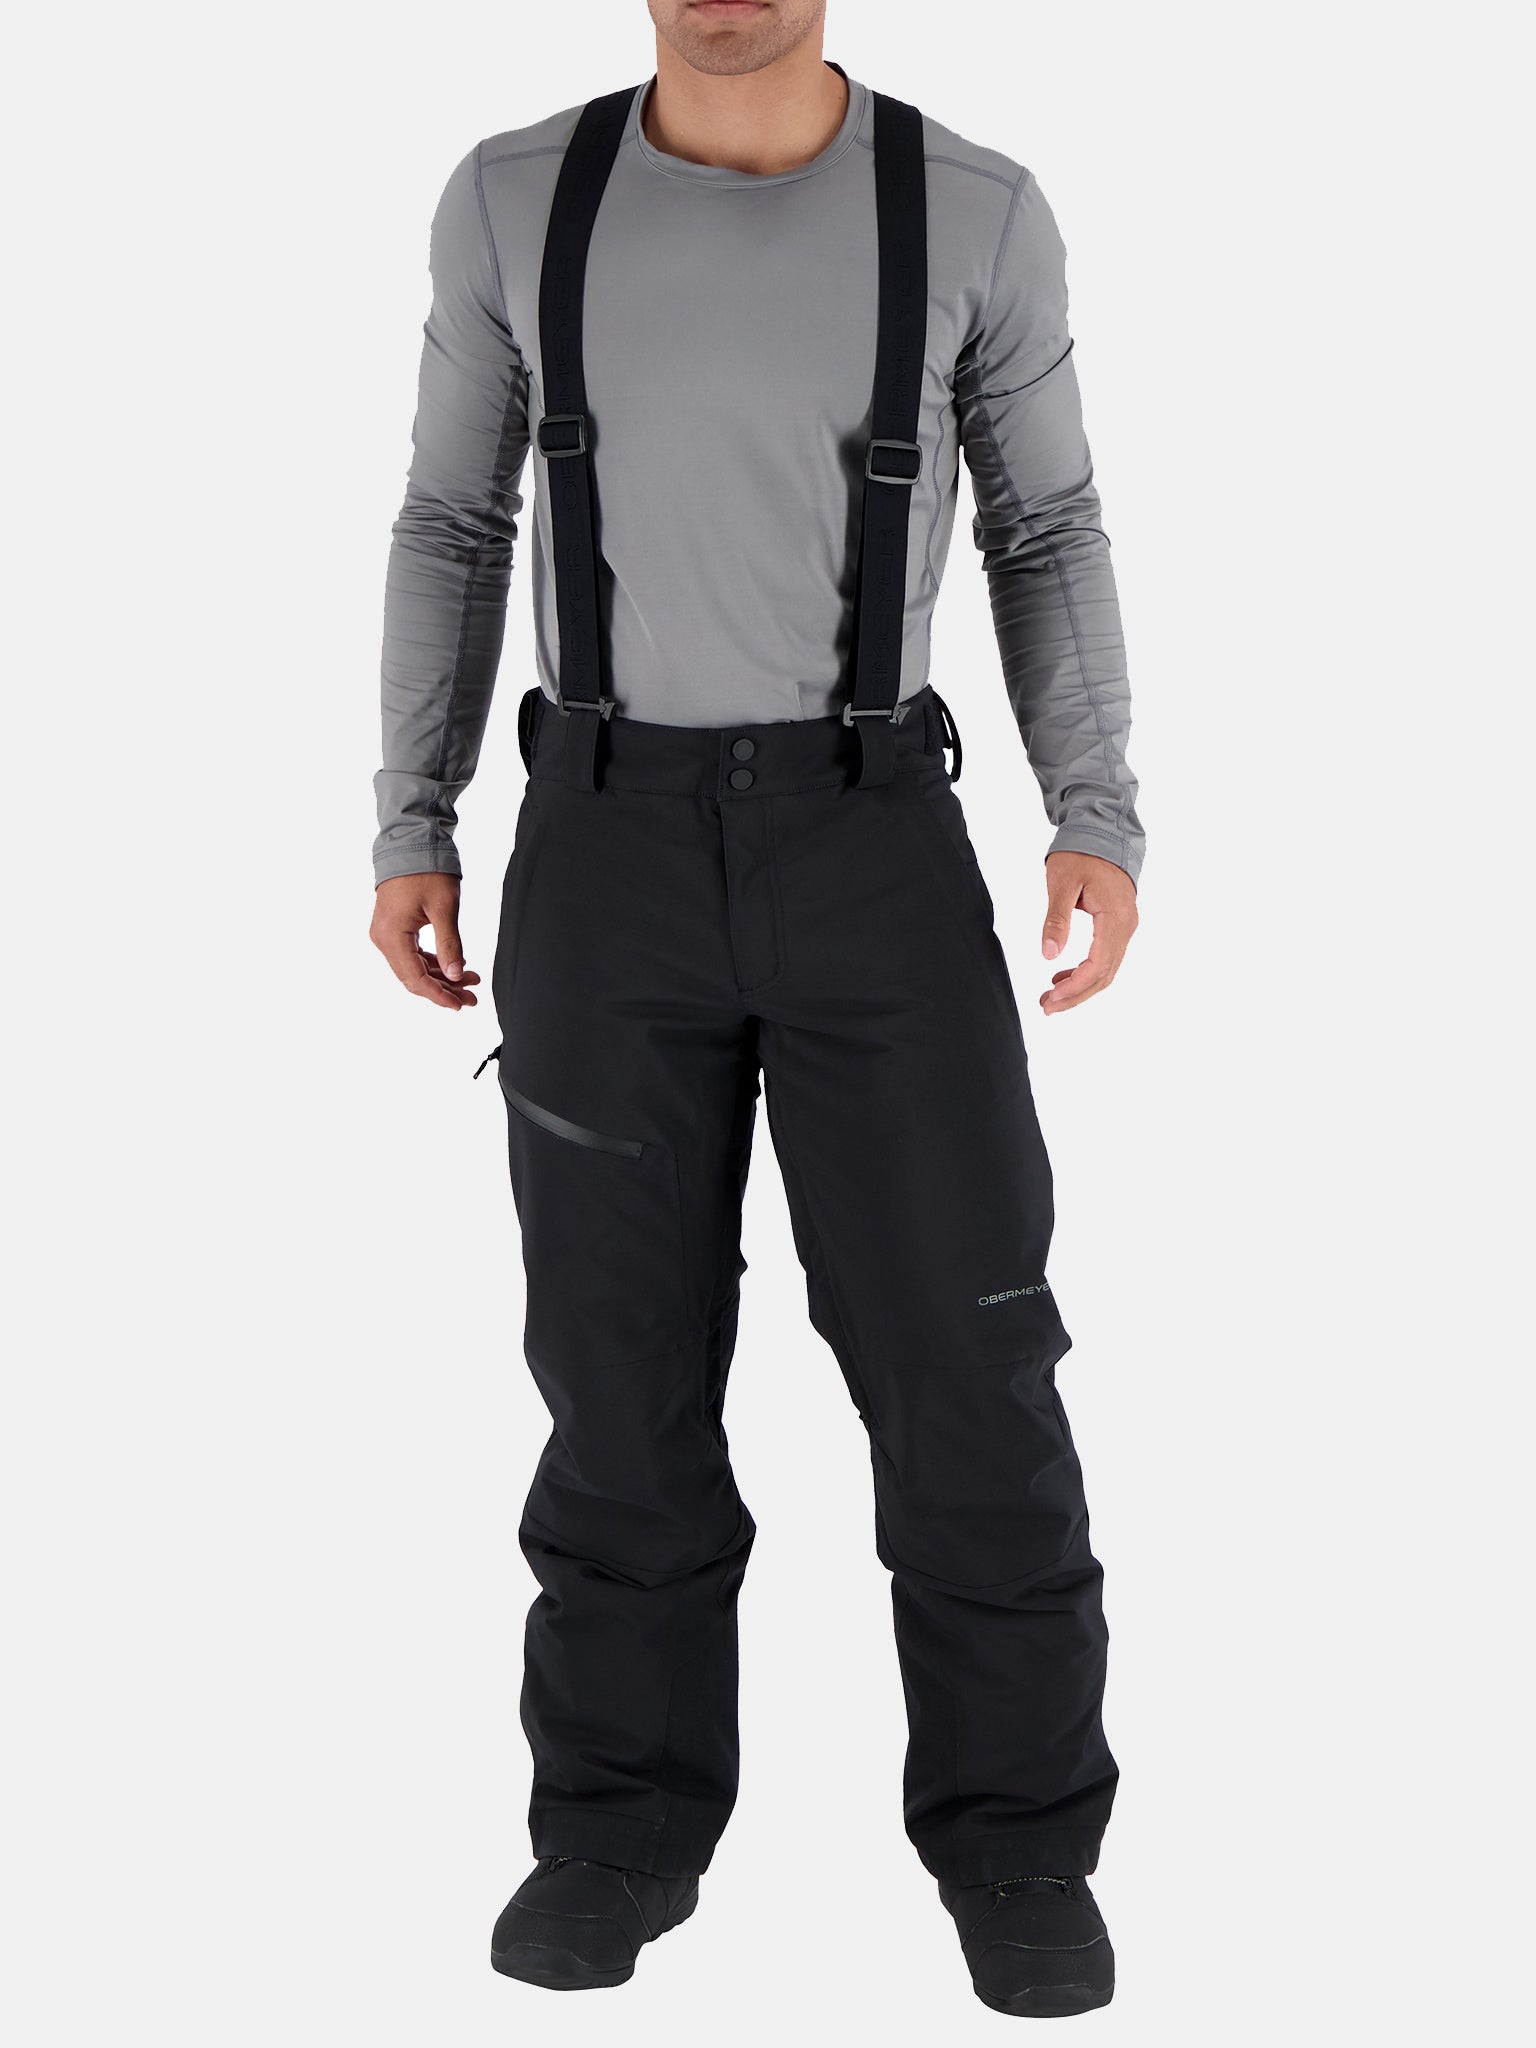 4 Hook Buckle Suspenders Men Leather Pants Adjustable Strap Braces  29.9-39.2in | eBay